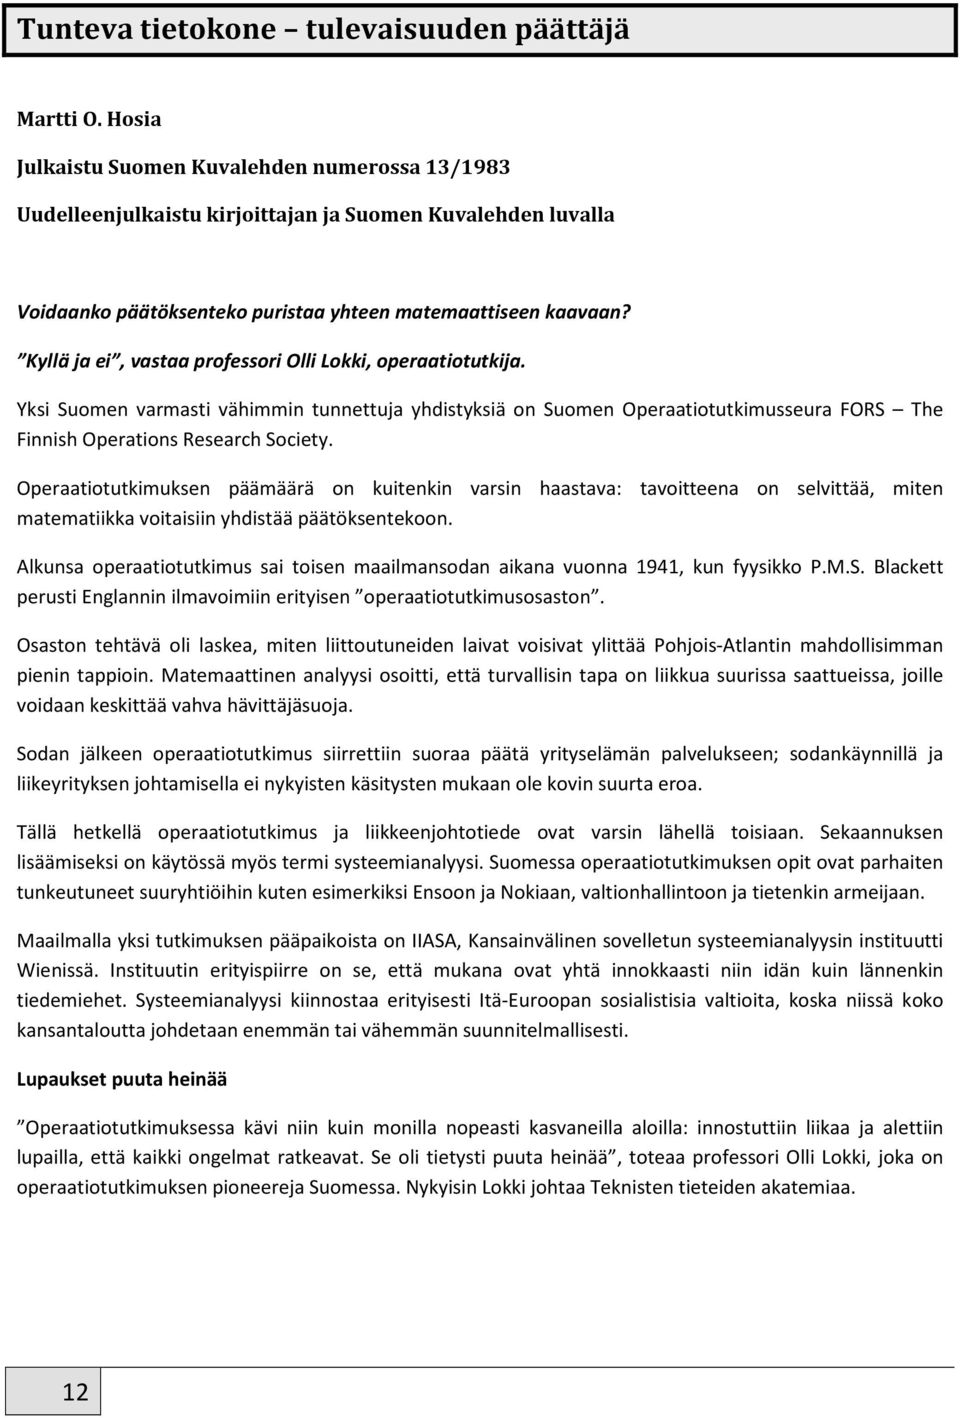 Kyllä ja ei, vastaa professori Olli Lokki, operaatiotutkija. Yksi Suomen varmasti vähimmin tunnettuja yhdistyksiä on Suomen Operaatiotutkimusseura FORS The Finnish Operations Research Society.